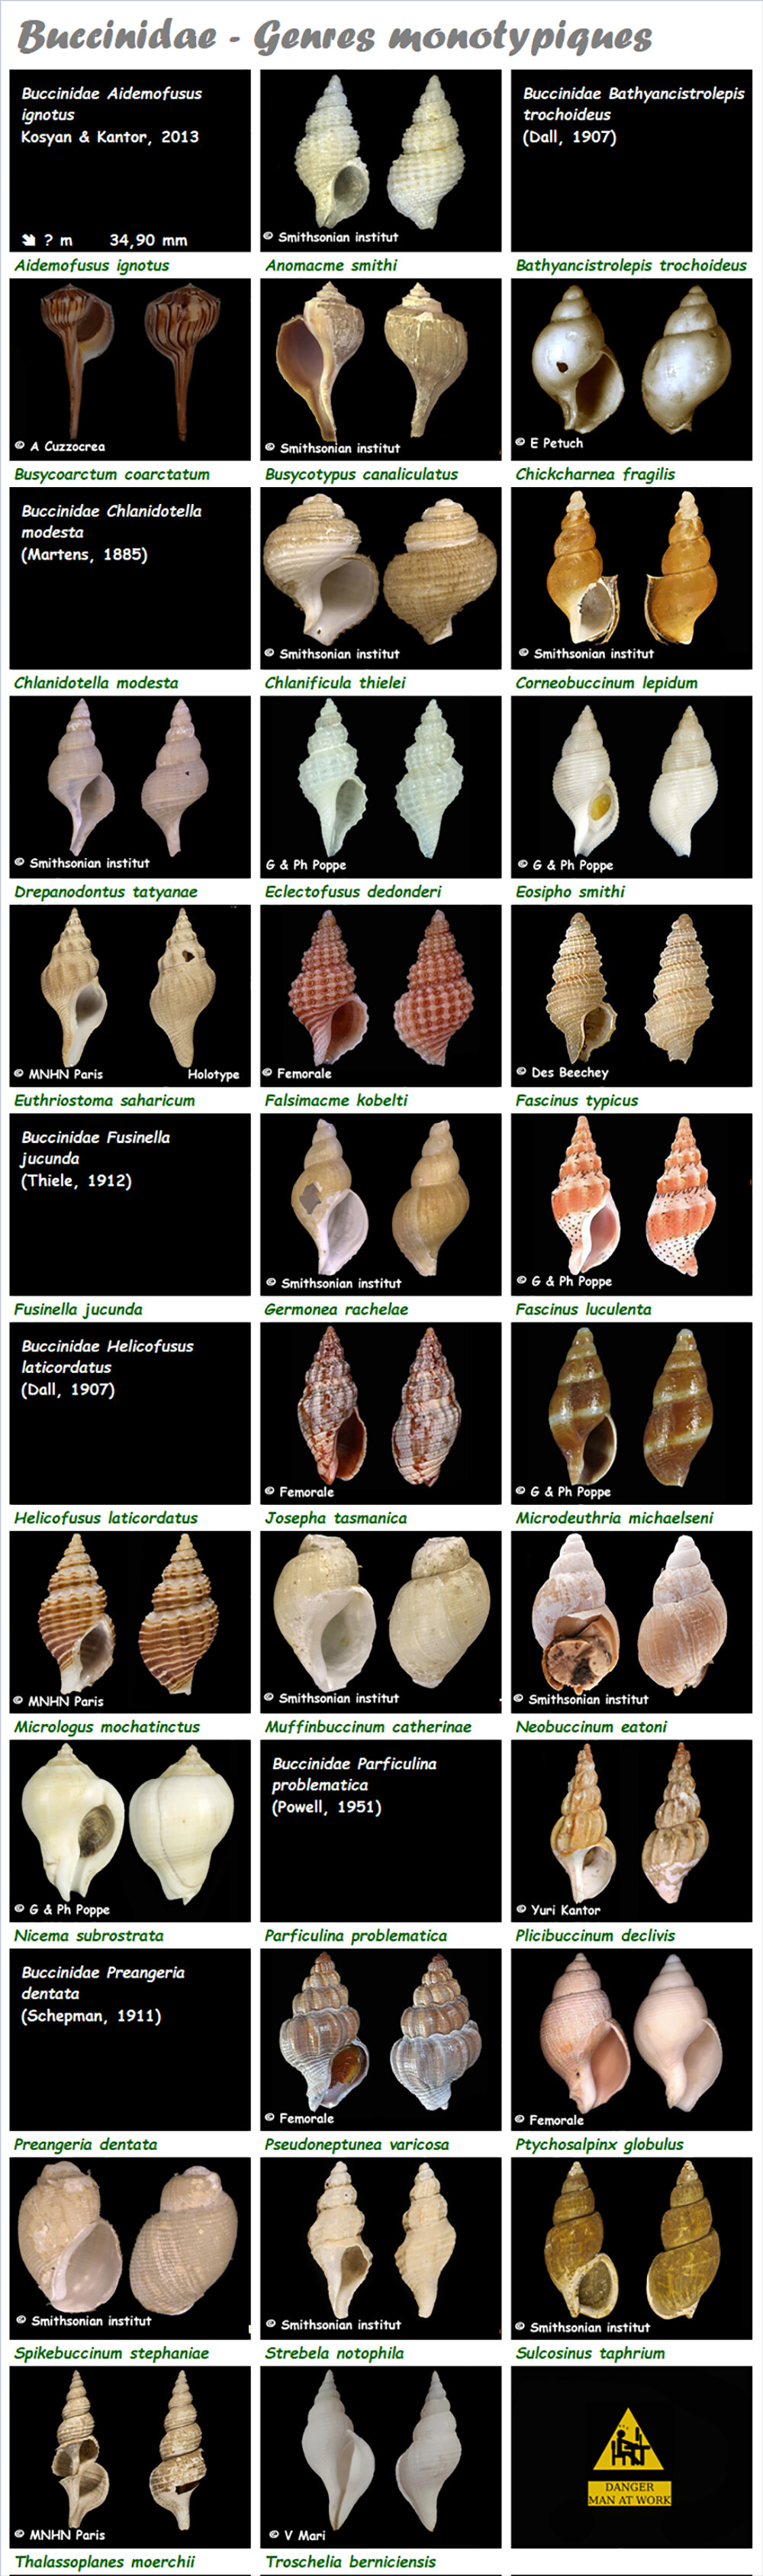 Buccinidae  - Les genres monotypiques, l'espèce, la planche Buccin29